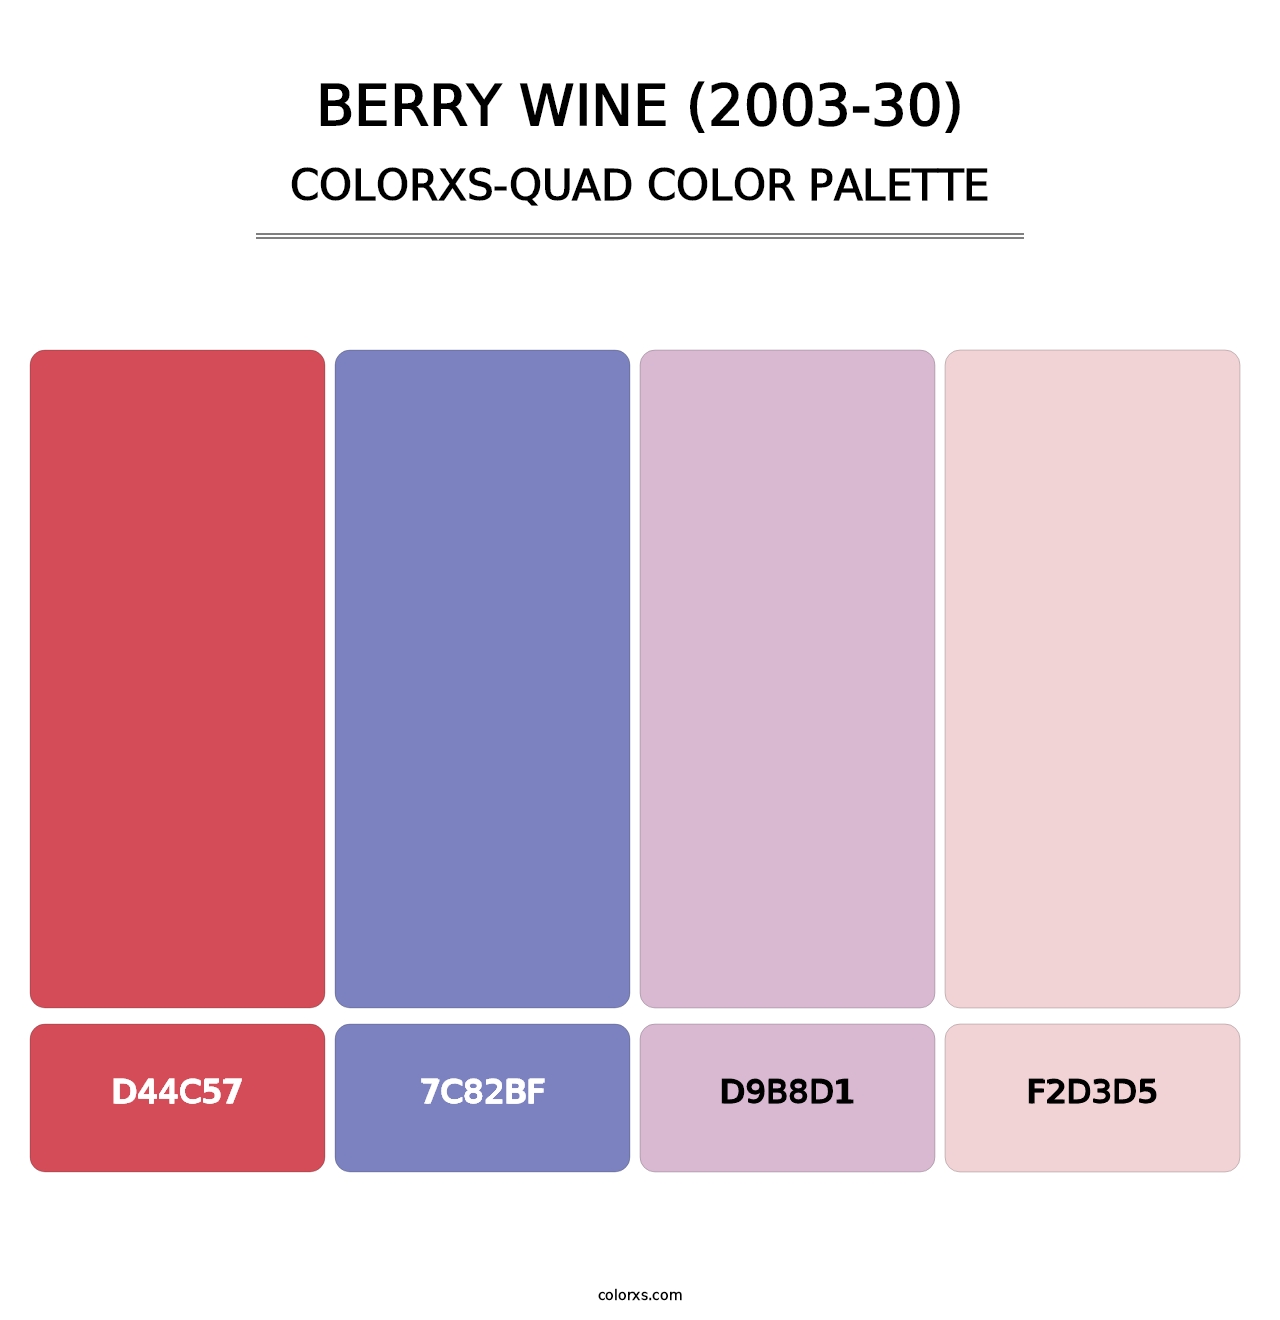 Berry Wine (2003-30) - Colorxs Quad Palette